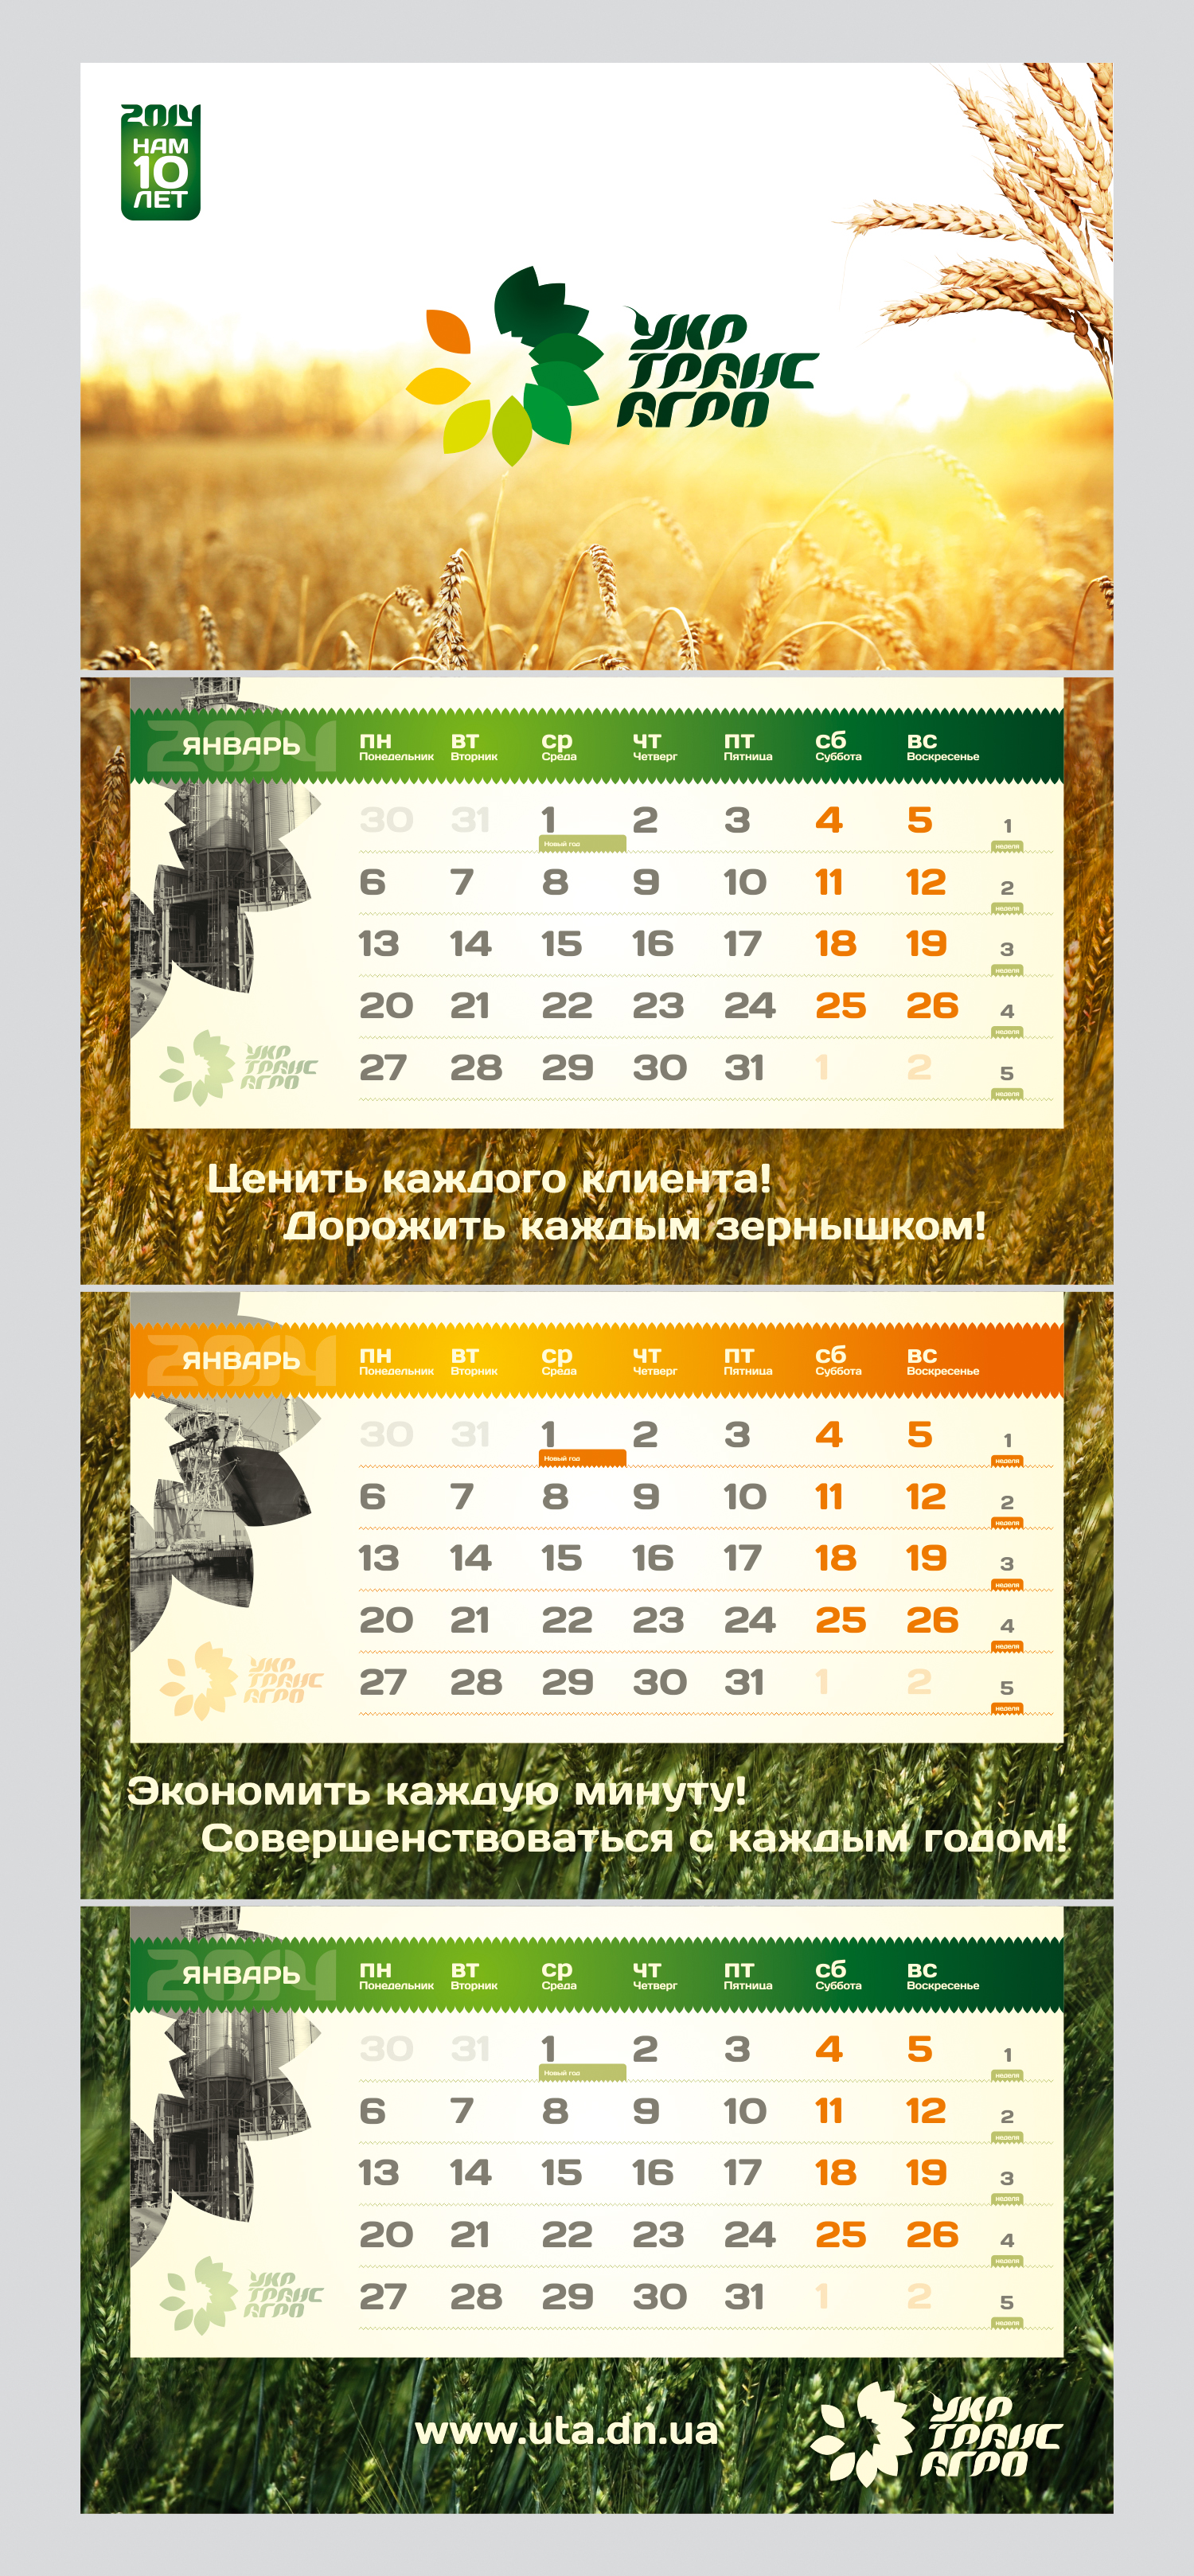 Квартальный календарь "УкрТрансАгро"